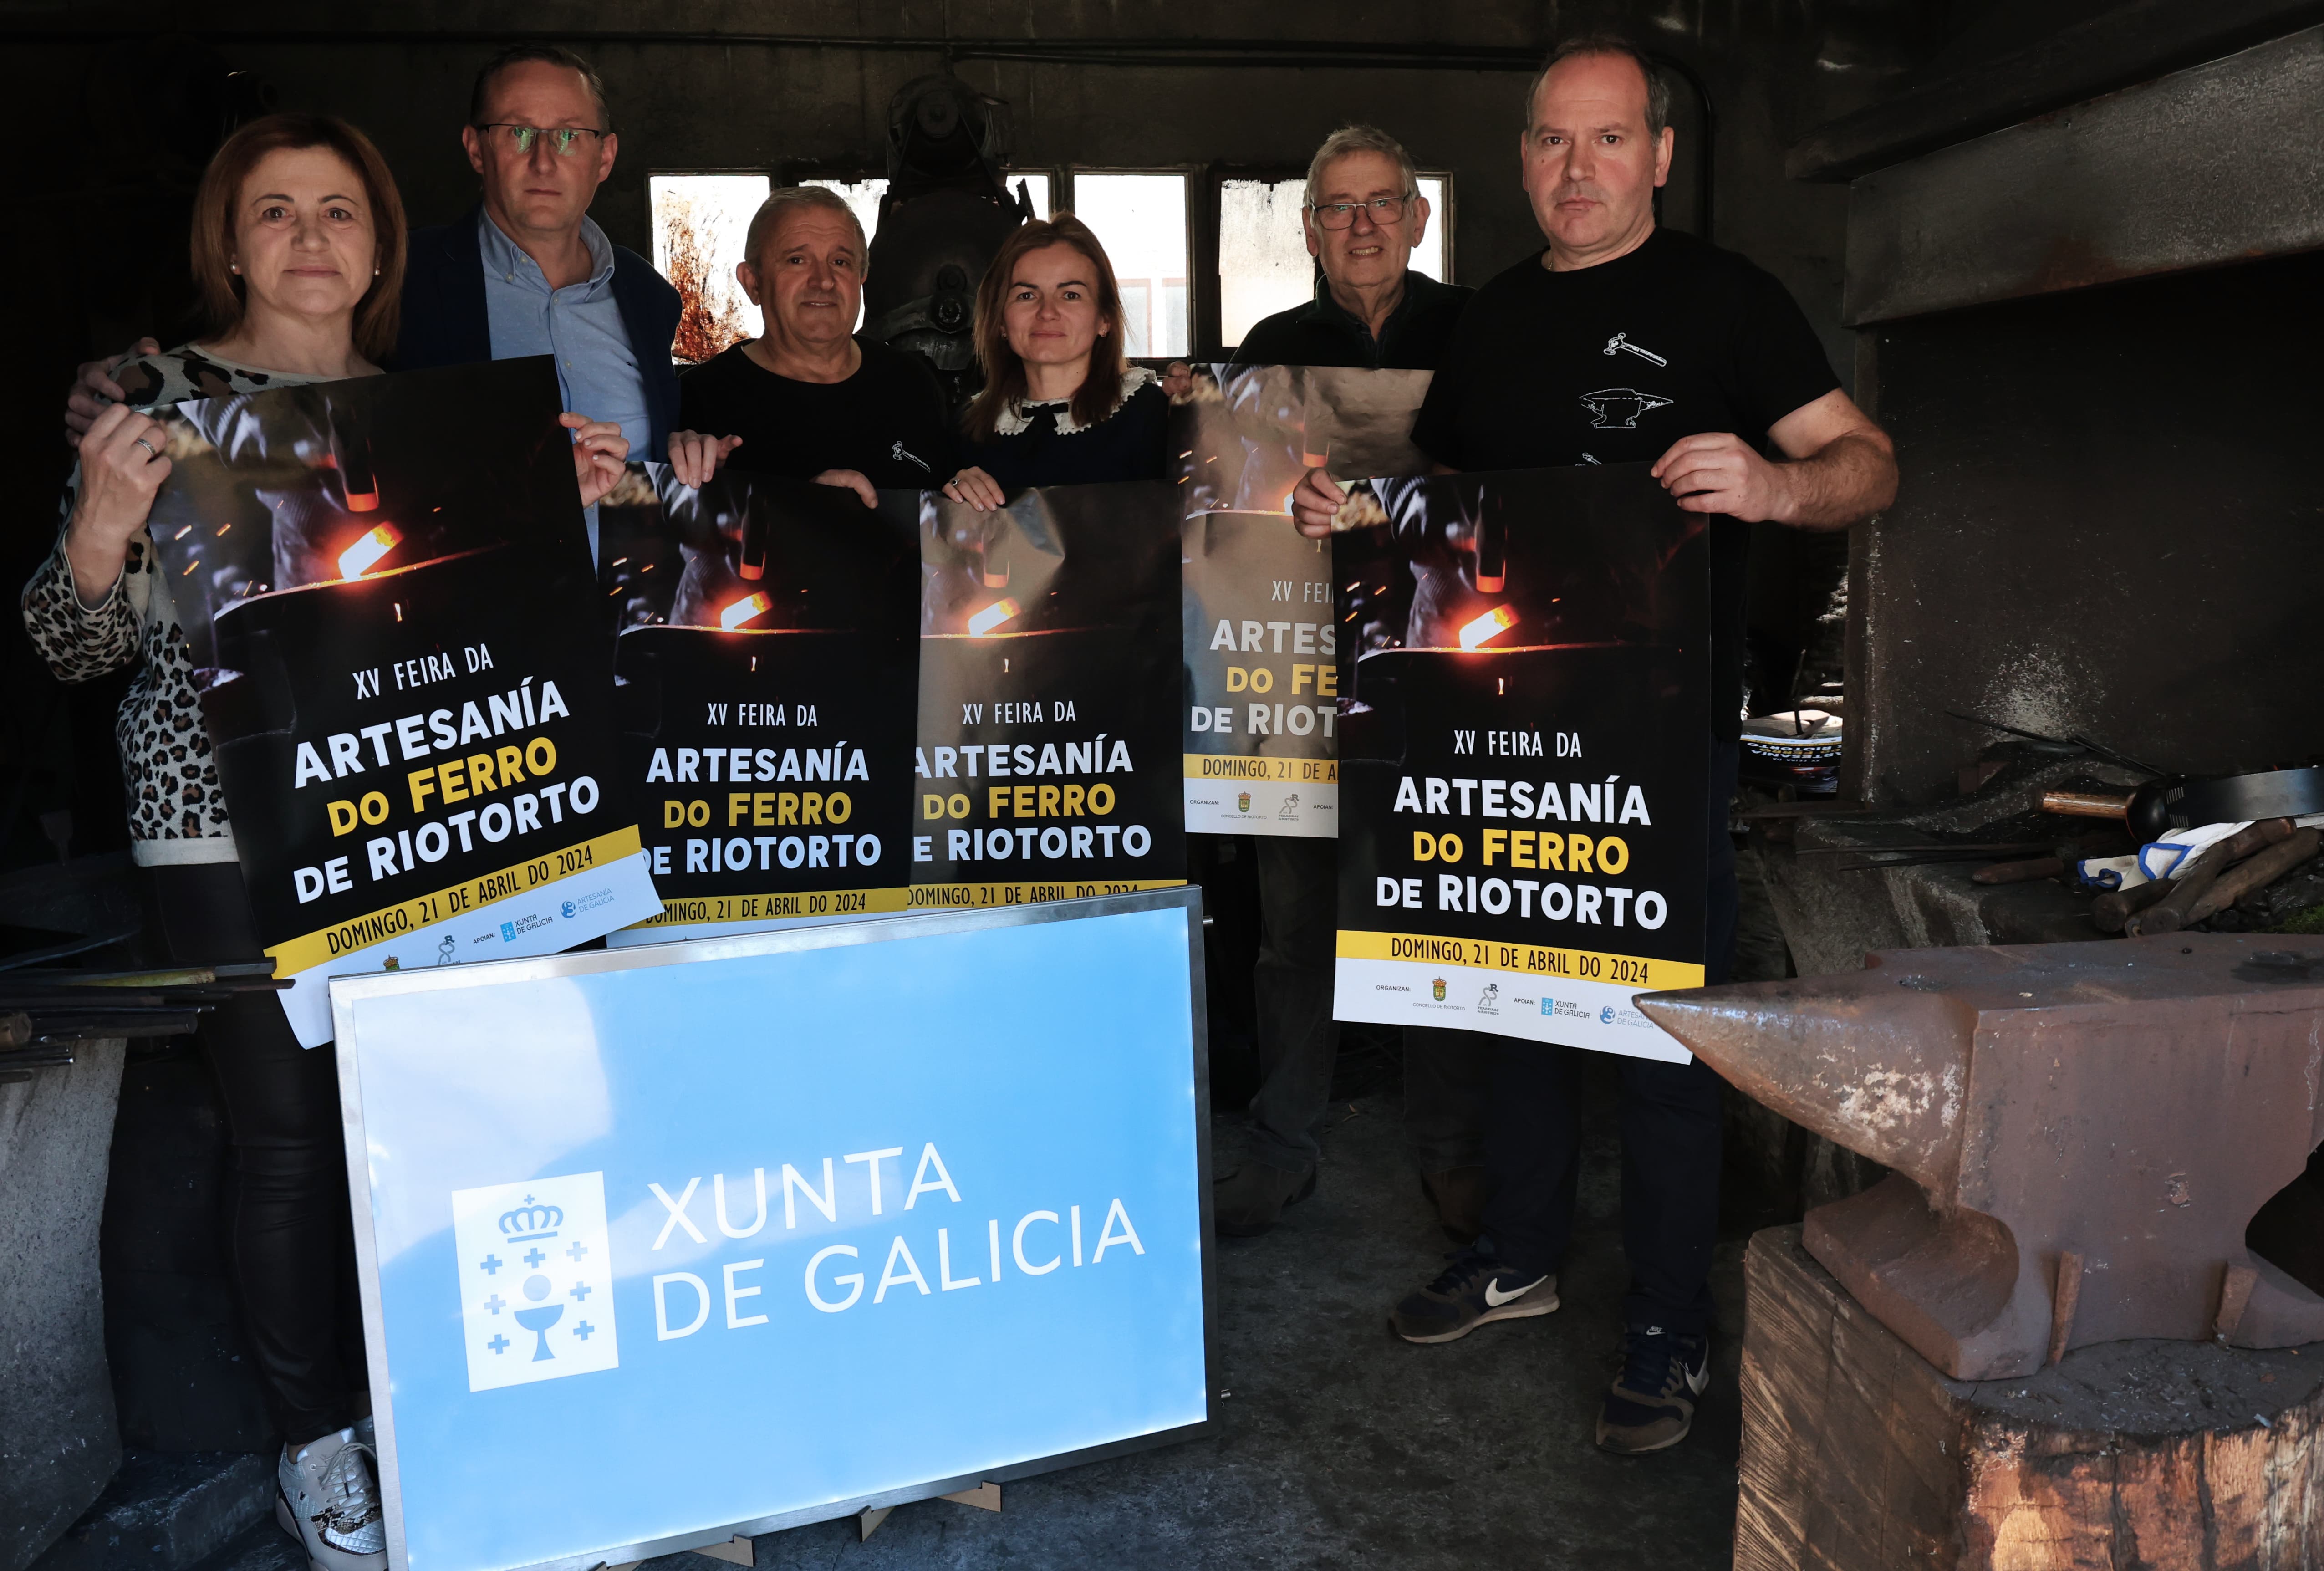 Image 2 of article A Xunta apoia a celebración da XV Feira de Artesanía do Ferro de Riotorto, que nesta edición amplía programa e participación de artesáns